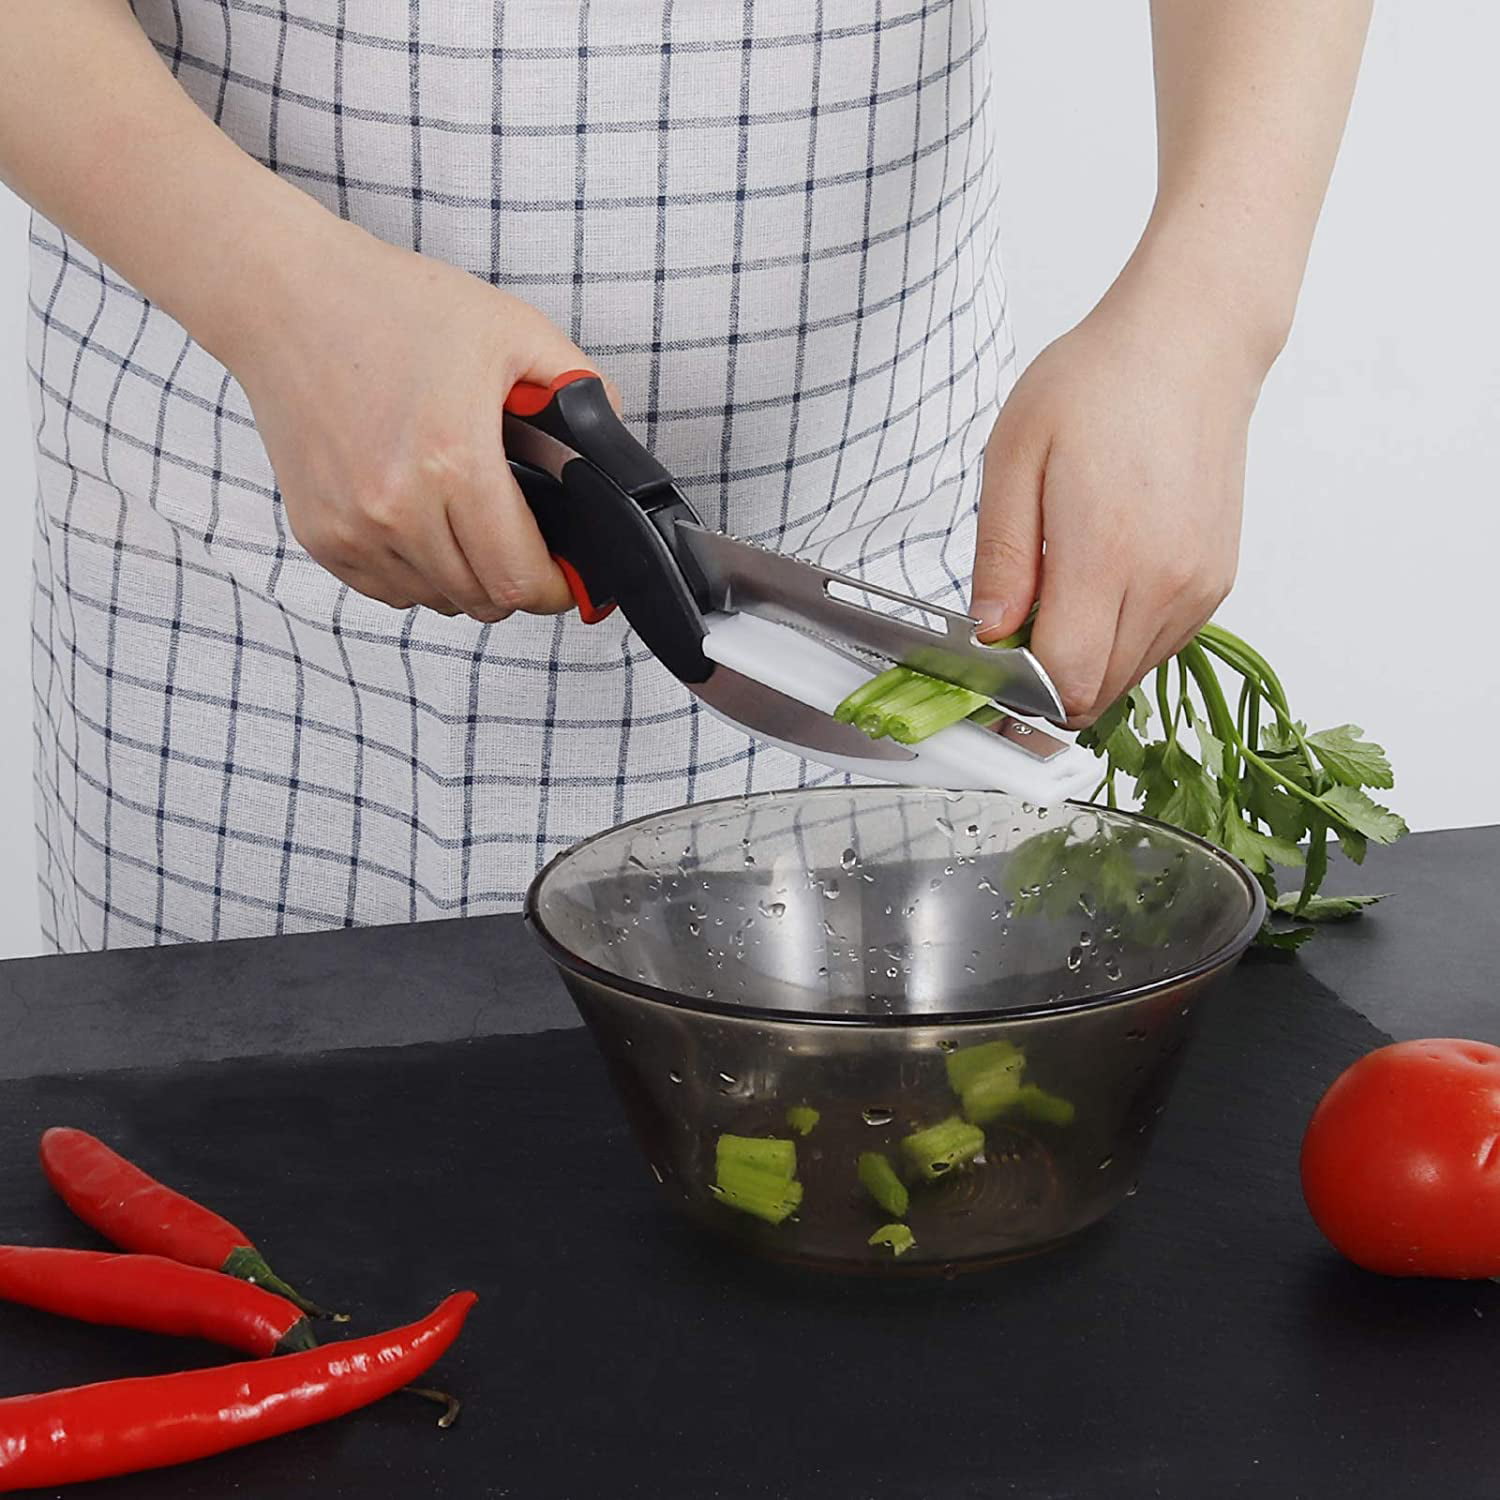  Easy Smart Food Cutter Chopper - 2in1 Kitchen Knife